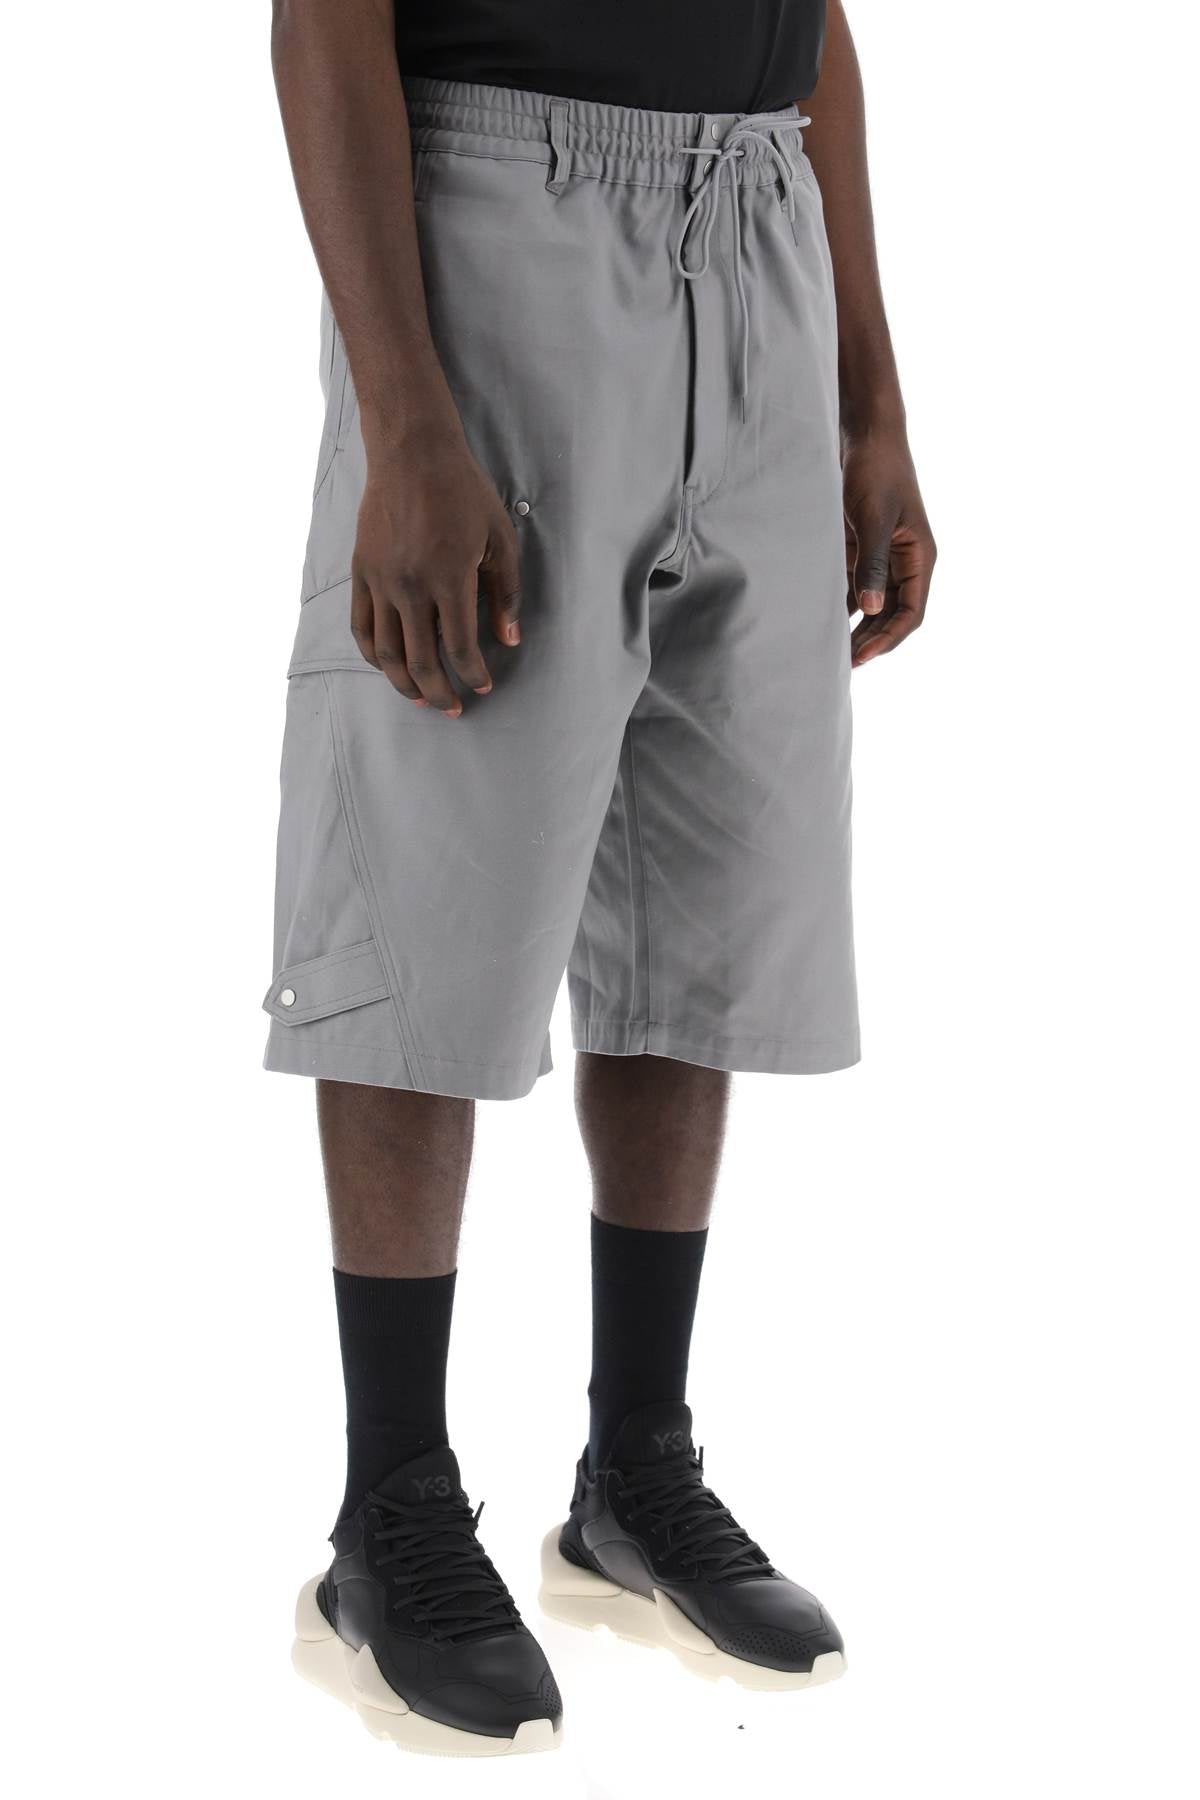 Y-3 canvas multi-pocket bermuda shorts. - Grey